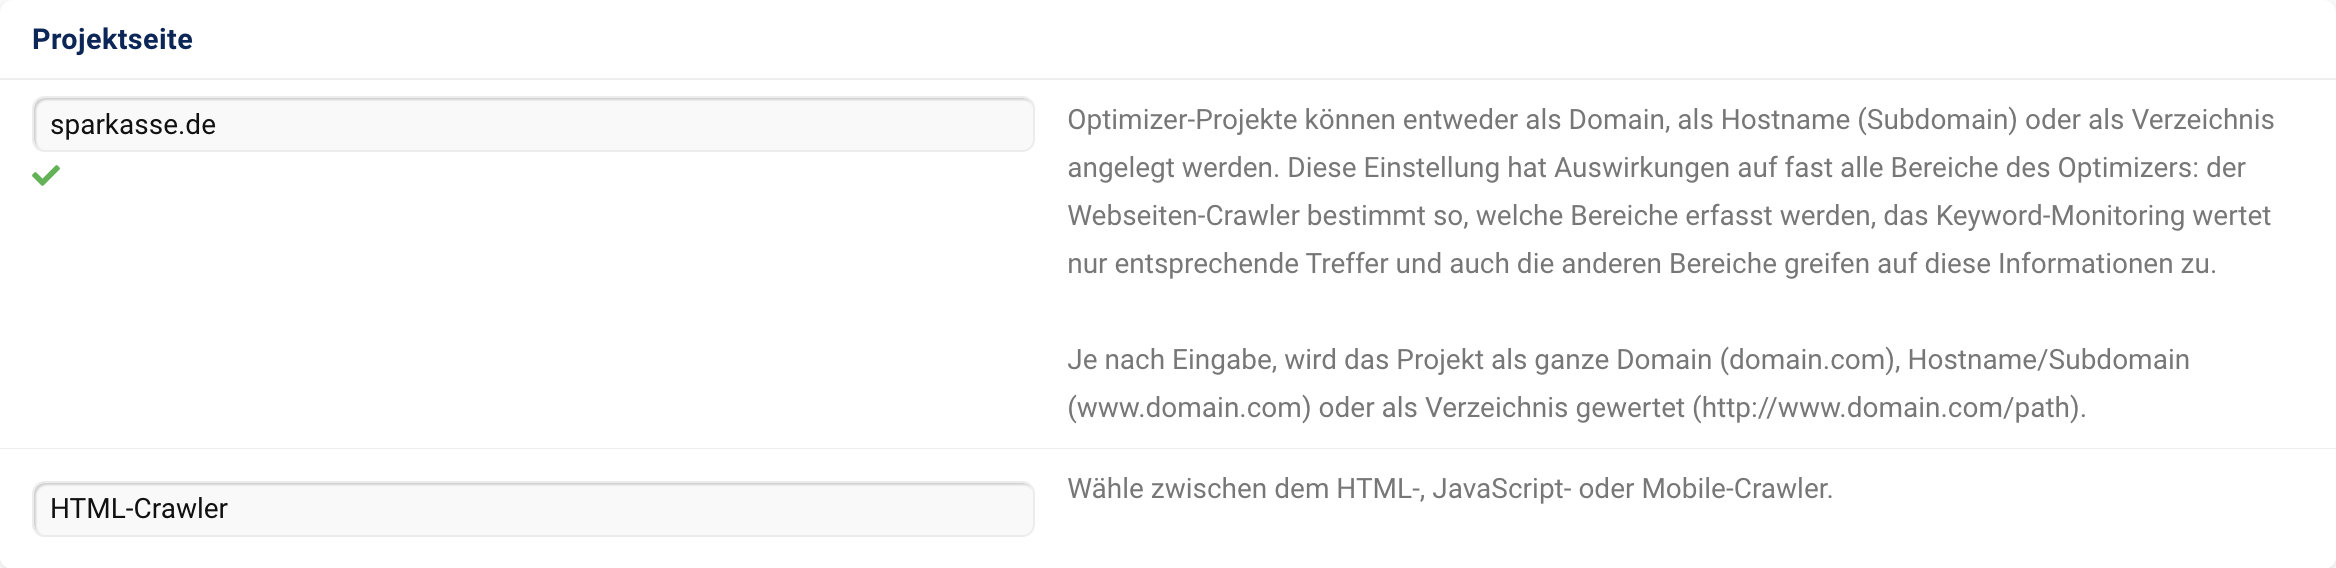 Eingabe der Projektseite. In diesem Fall ist sparkasse.de eingegeben.